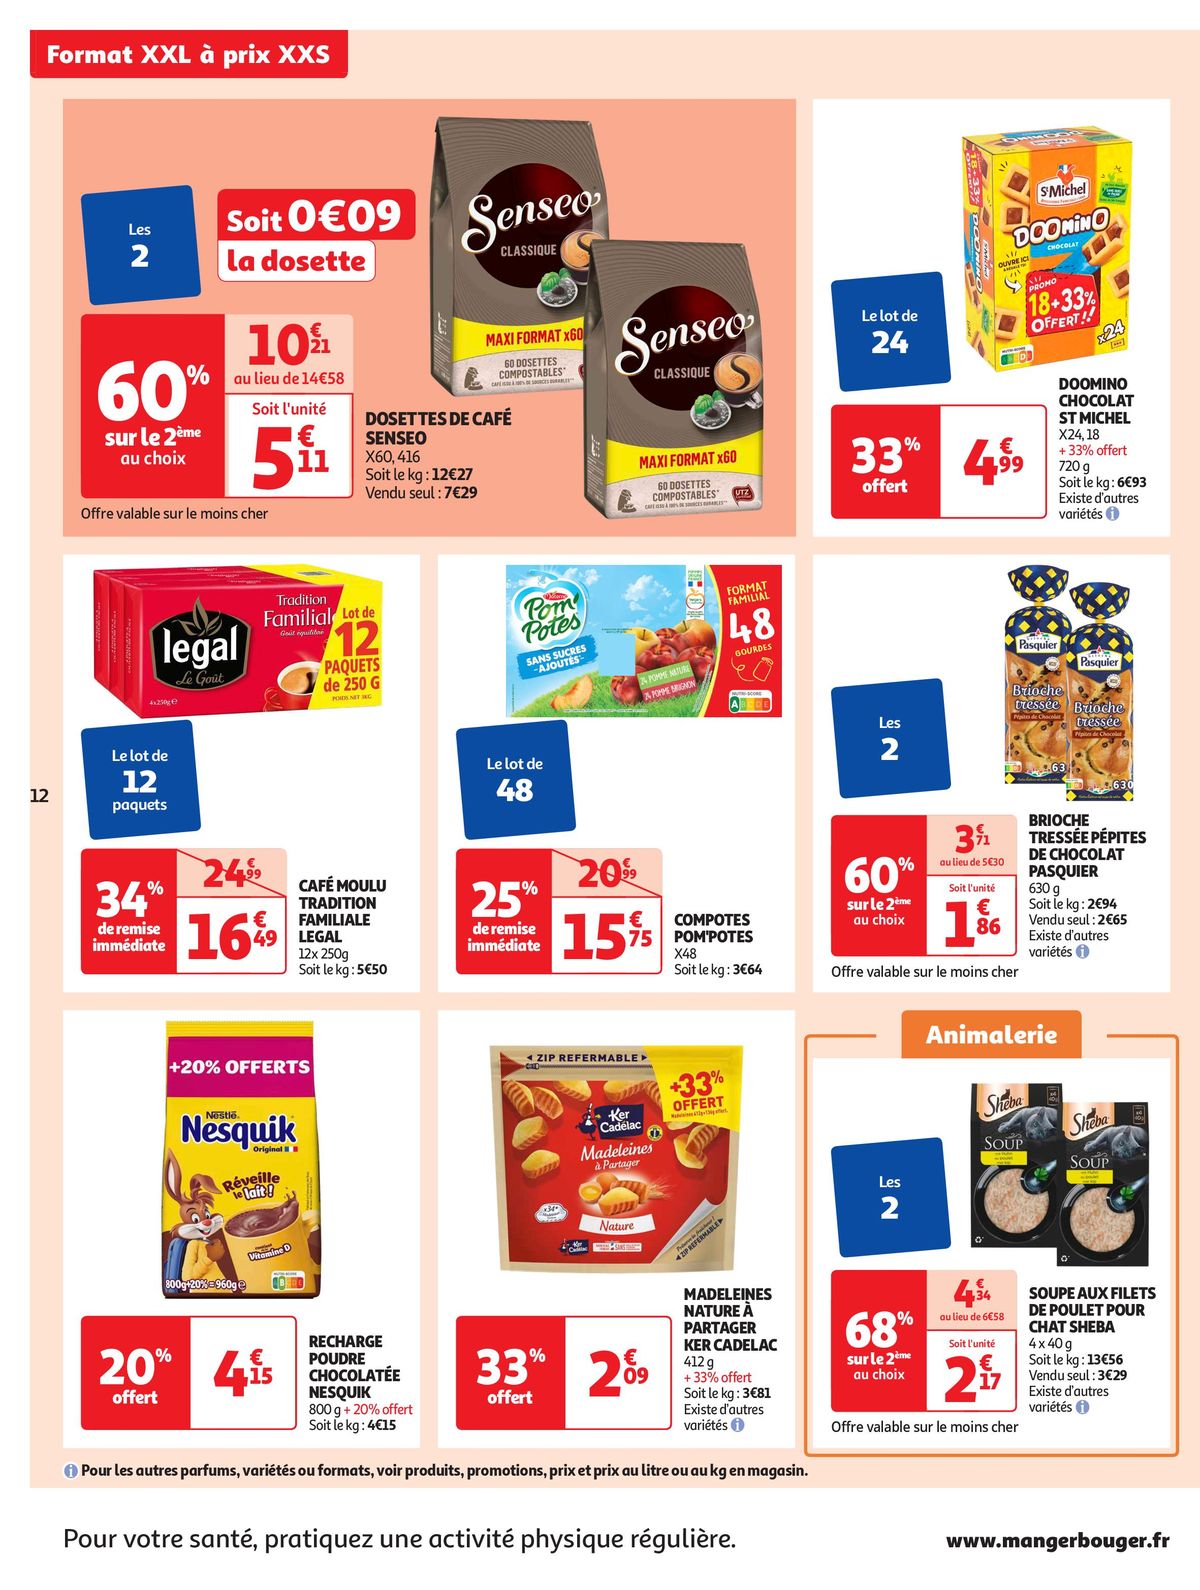 Catalogue Format XXL à prix XXS dans votre supermarché, page 00012